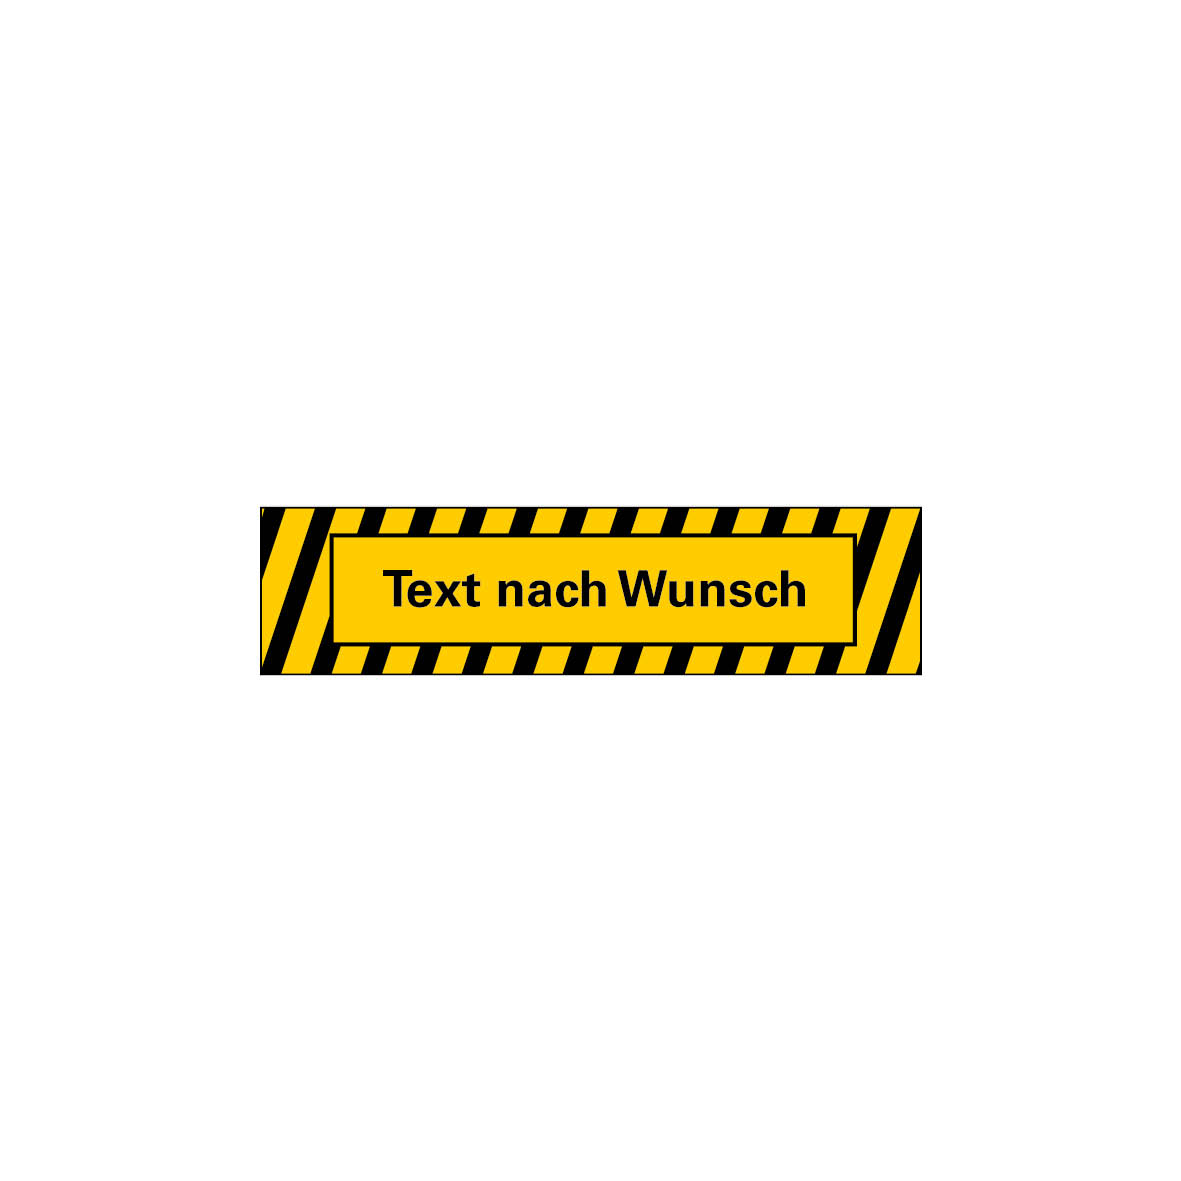 Antirutschbelag Warnmarkierung, 10.0015, gelb-schwarz, selbstklebend, Antirutsch R10, 800/200 mm, Text nach Wunsch